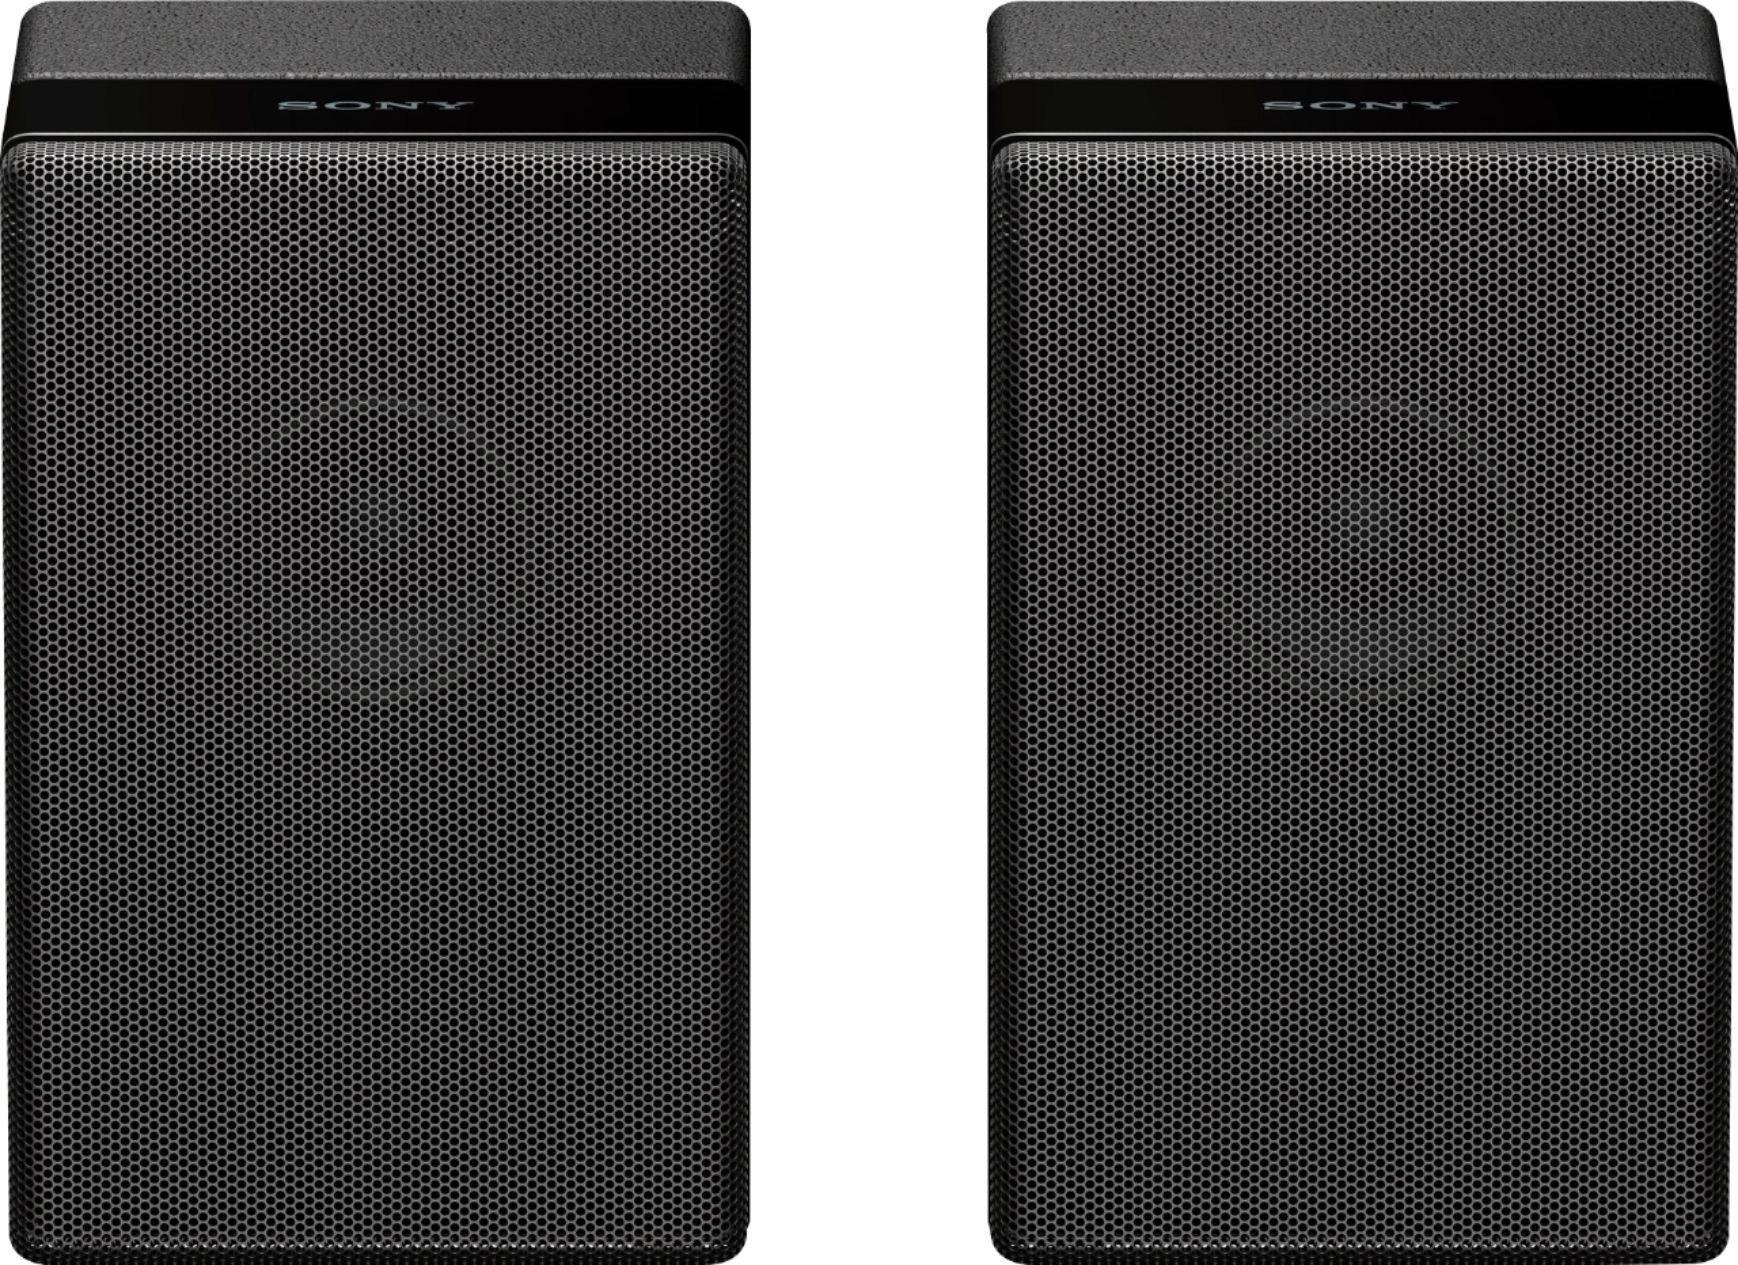 Sony Wireless Rear Channel Speakers (Pair) Black SAZ9R - Best Buy